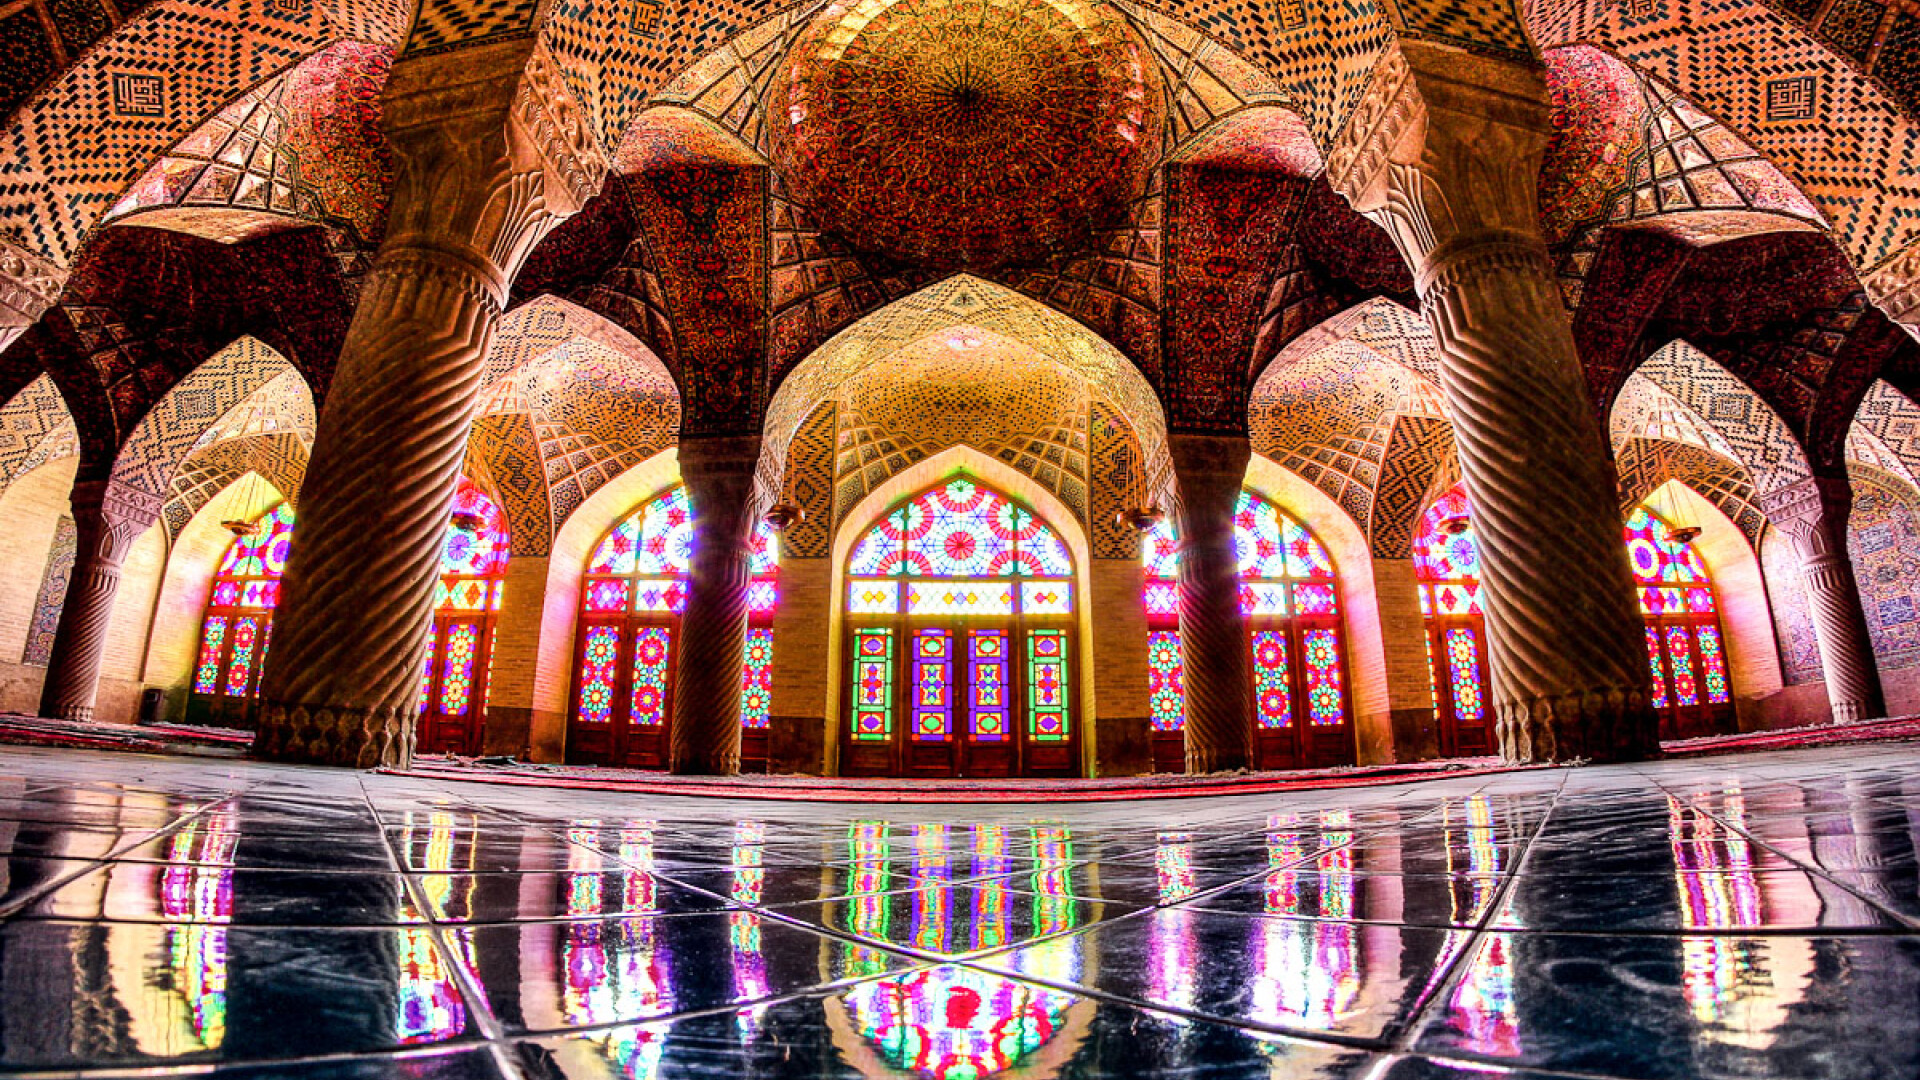 Moscheea Nasir Al-Mulk, cunoscuta si ca